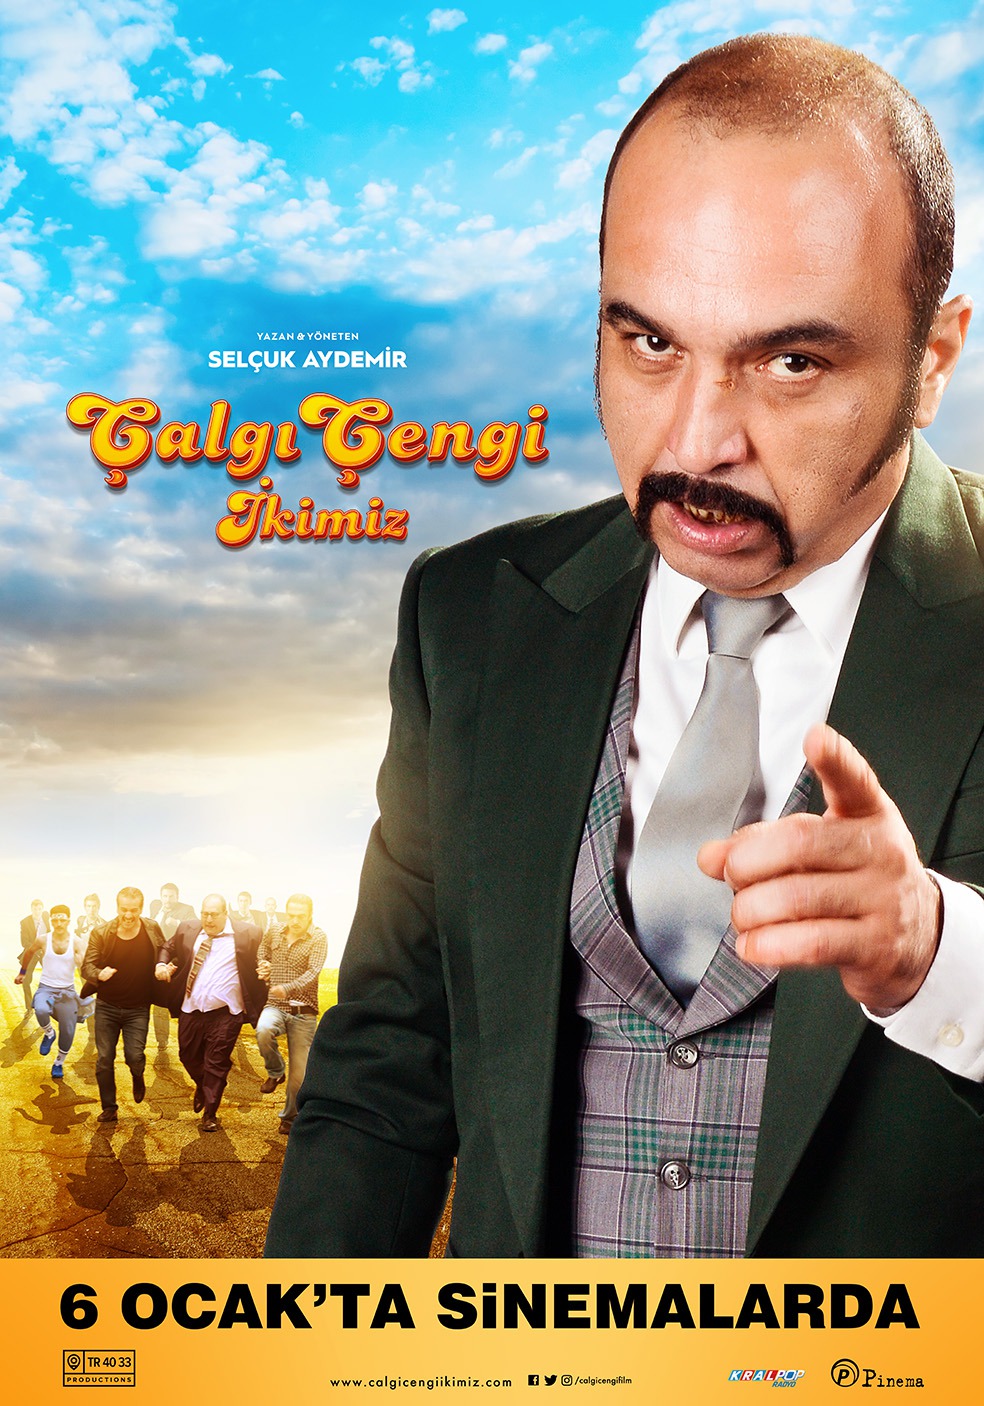 Extra Large Movie Poster Image for Çalgi Çengi Ikimiz (#7 of 14)